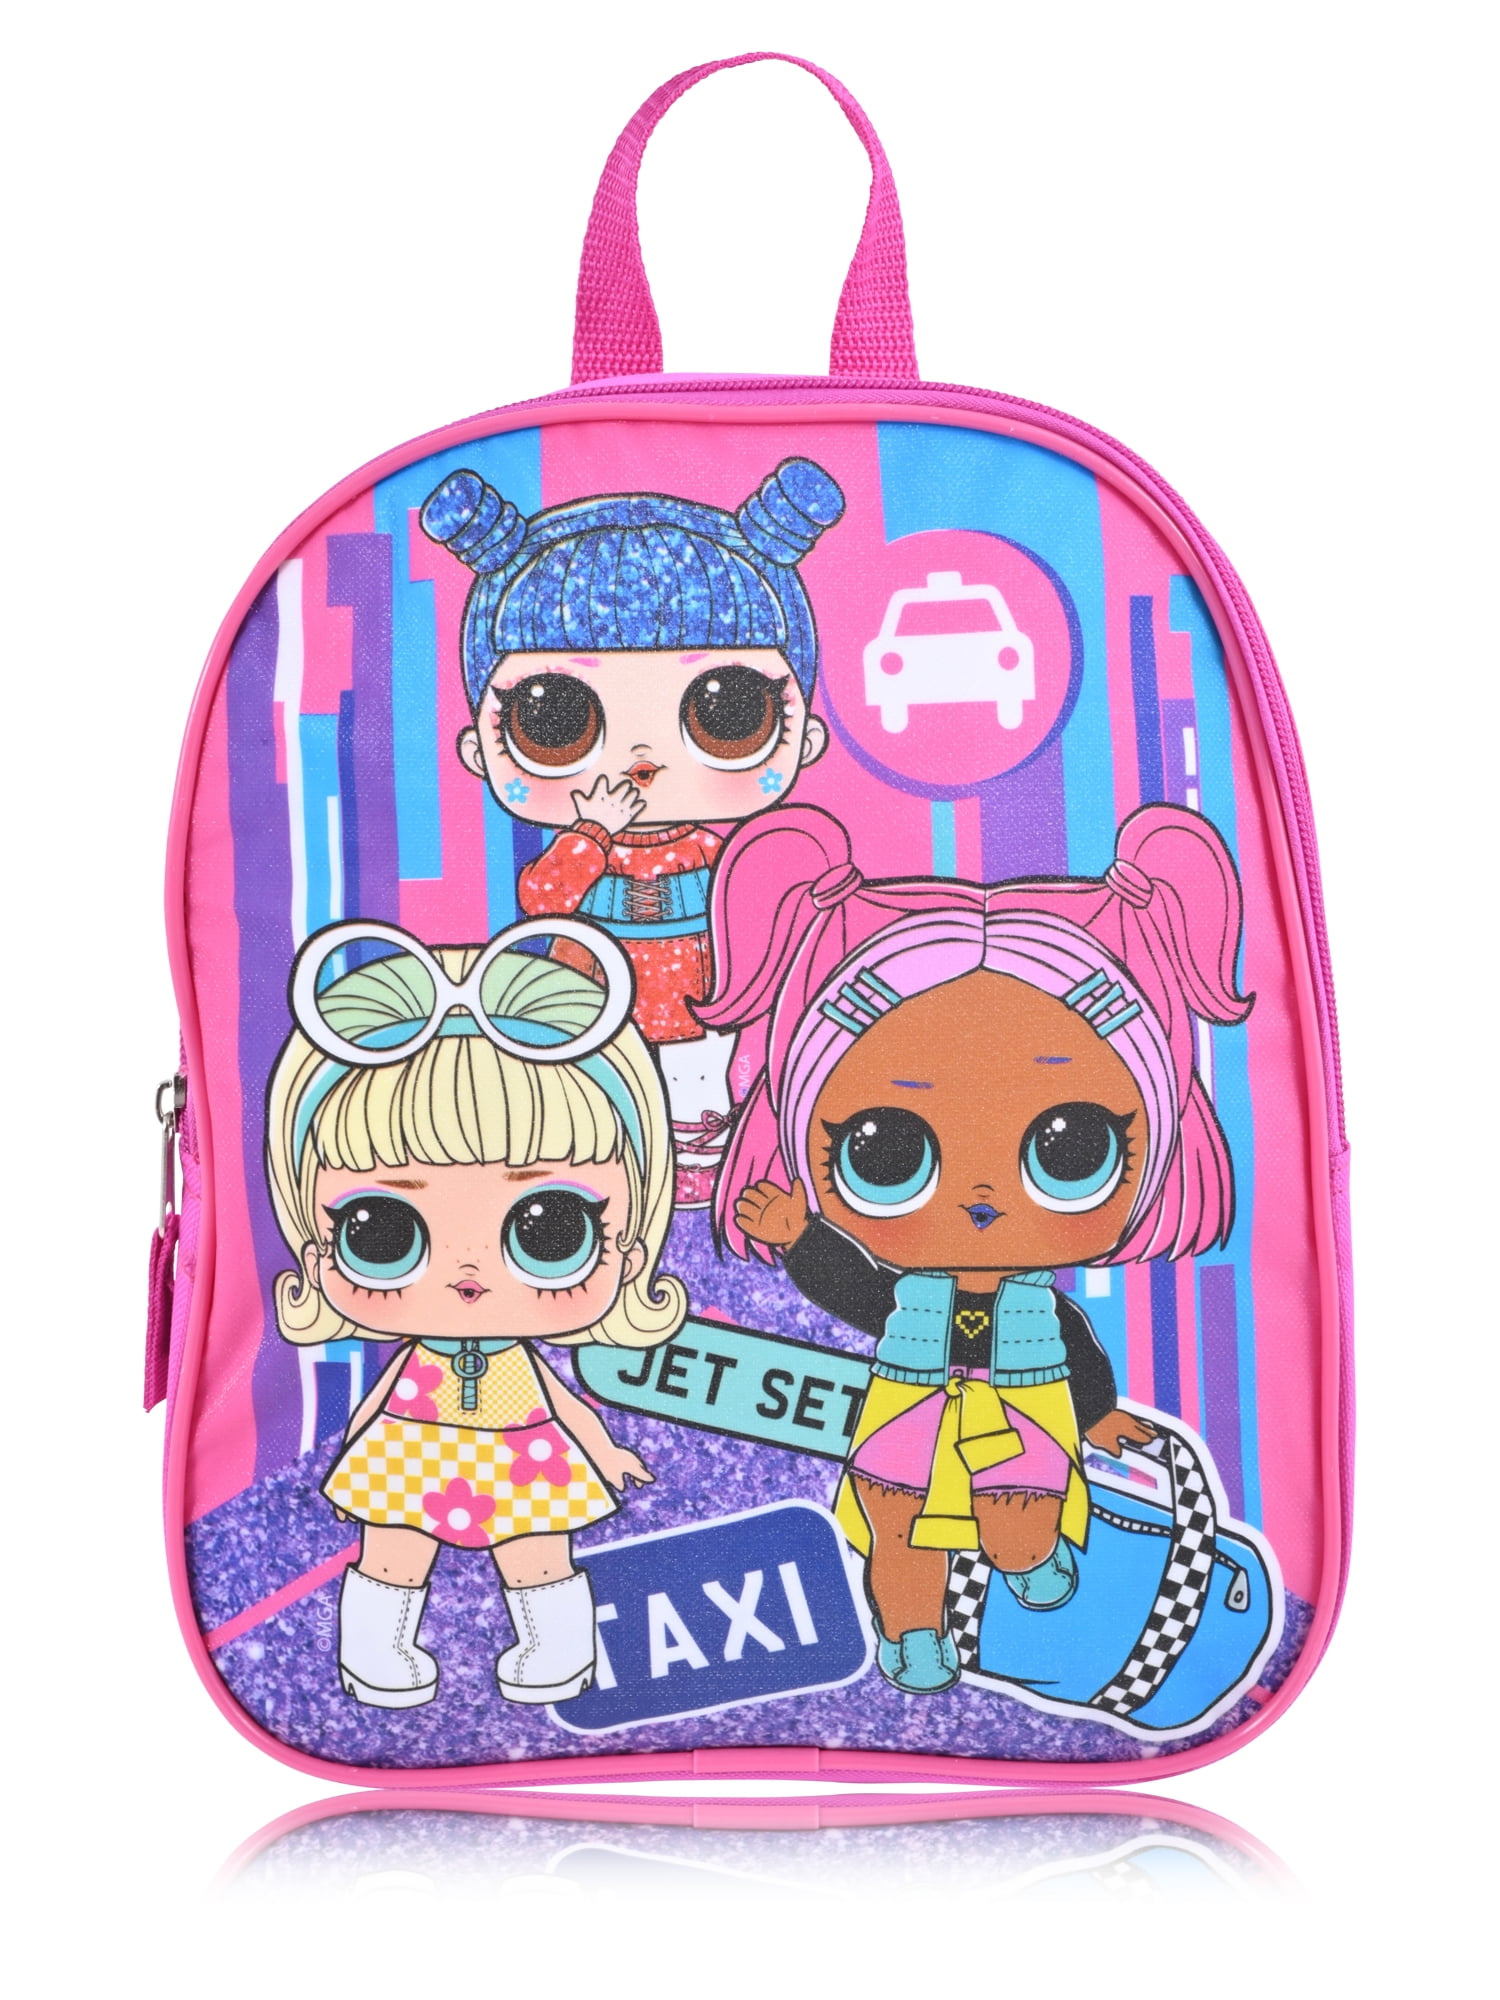 MGA Entertainment L O L Surprise Girl s 11 Mini Backpack Pink 7712762d ccbd 47d0 87bf 2eb32d624ab8.7b06b41cad730ace74e9353595cf19e0